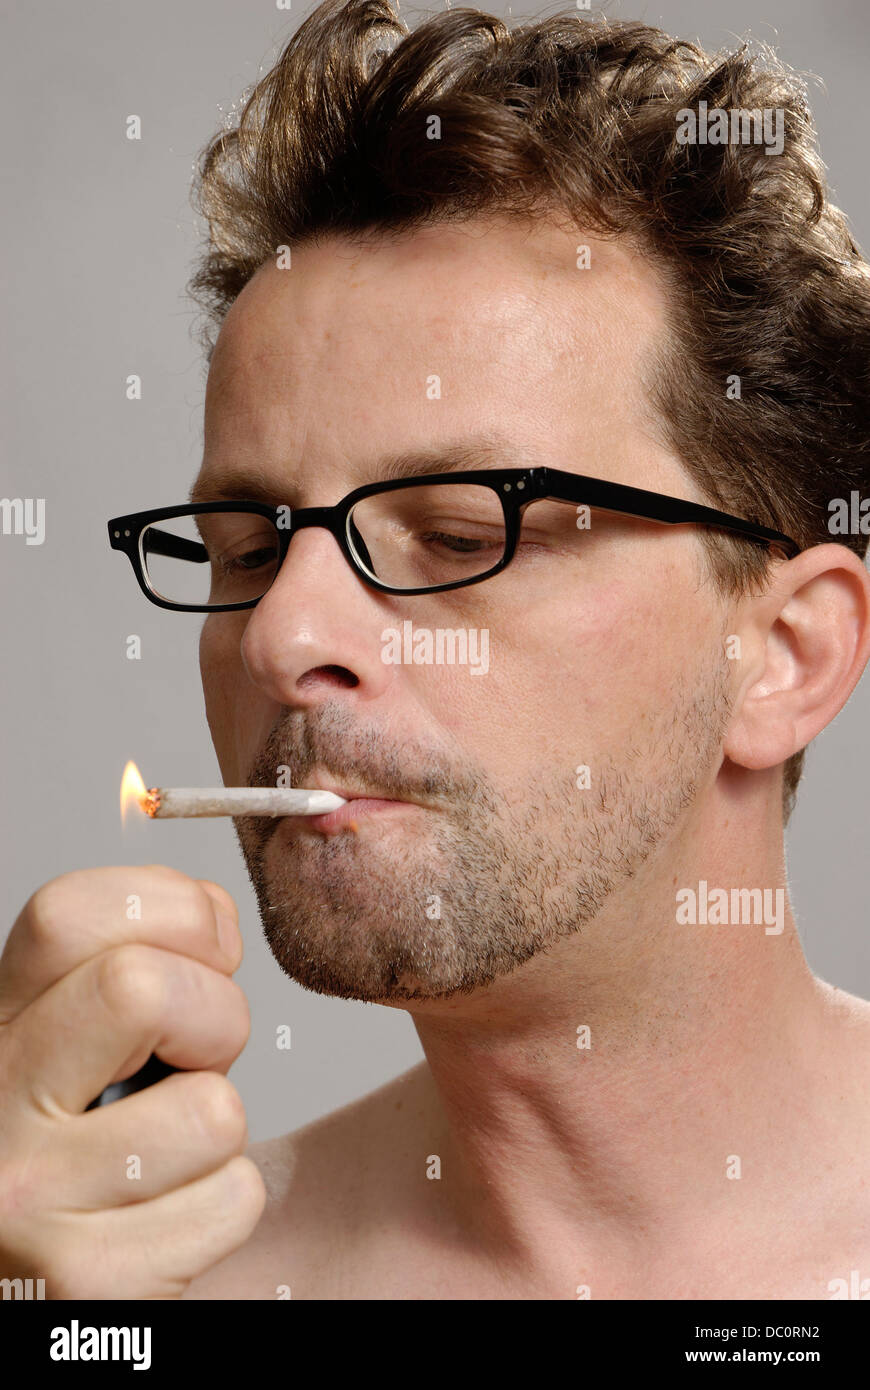 Zigarette Anzünden Stockfotos Und Bilder Kaufen Alamy